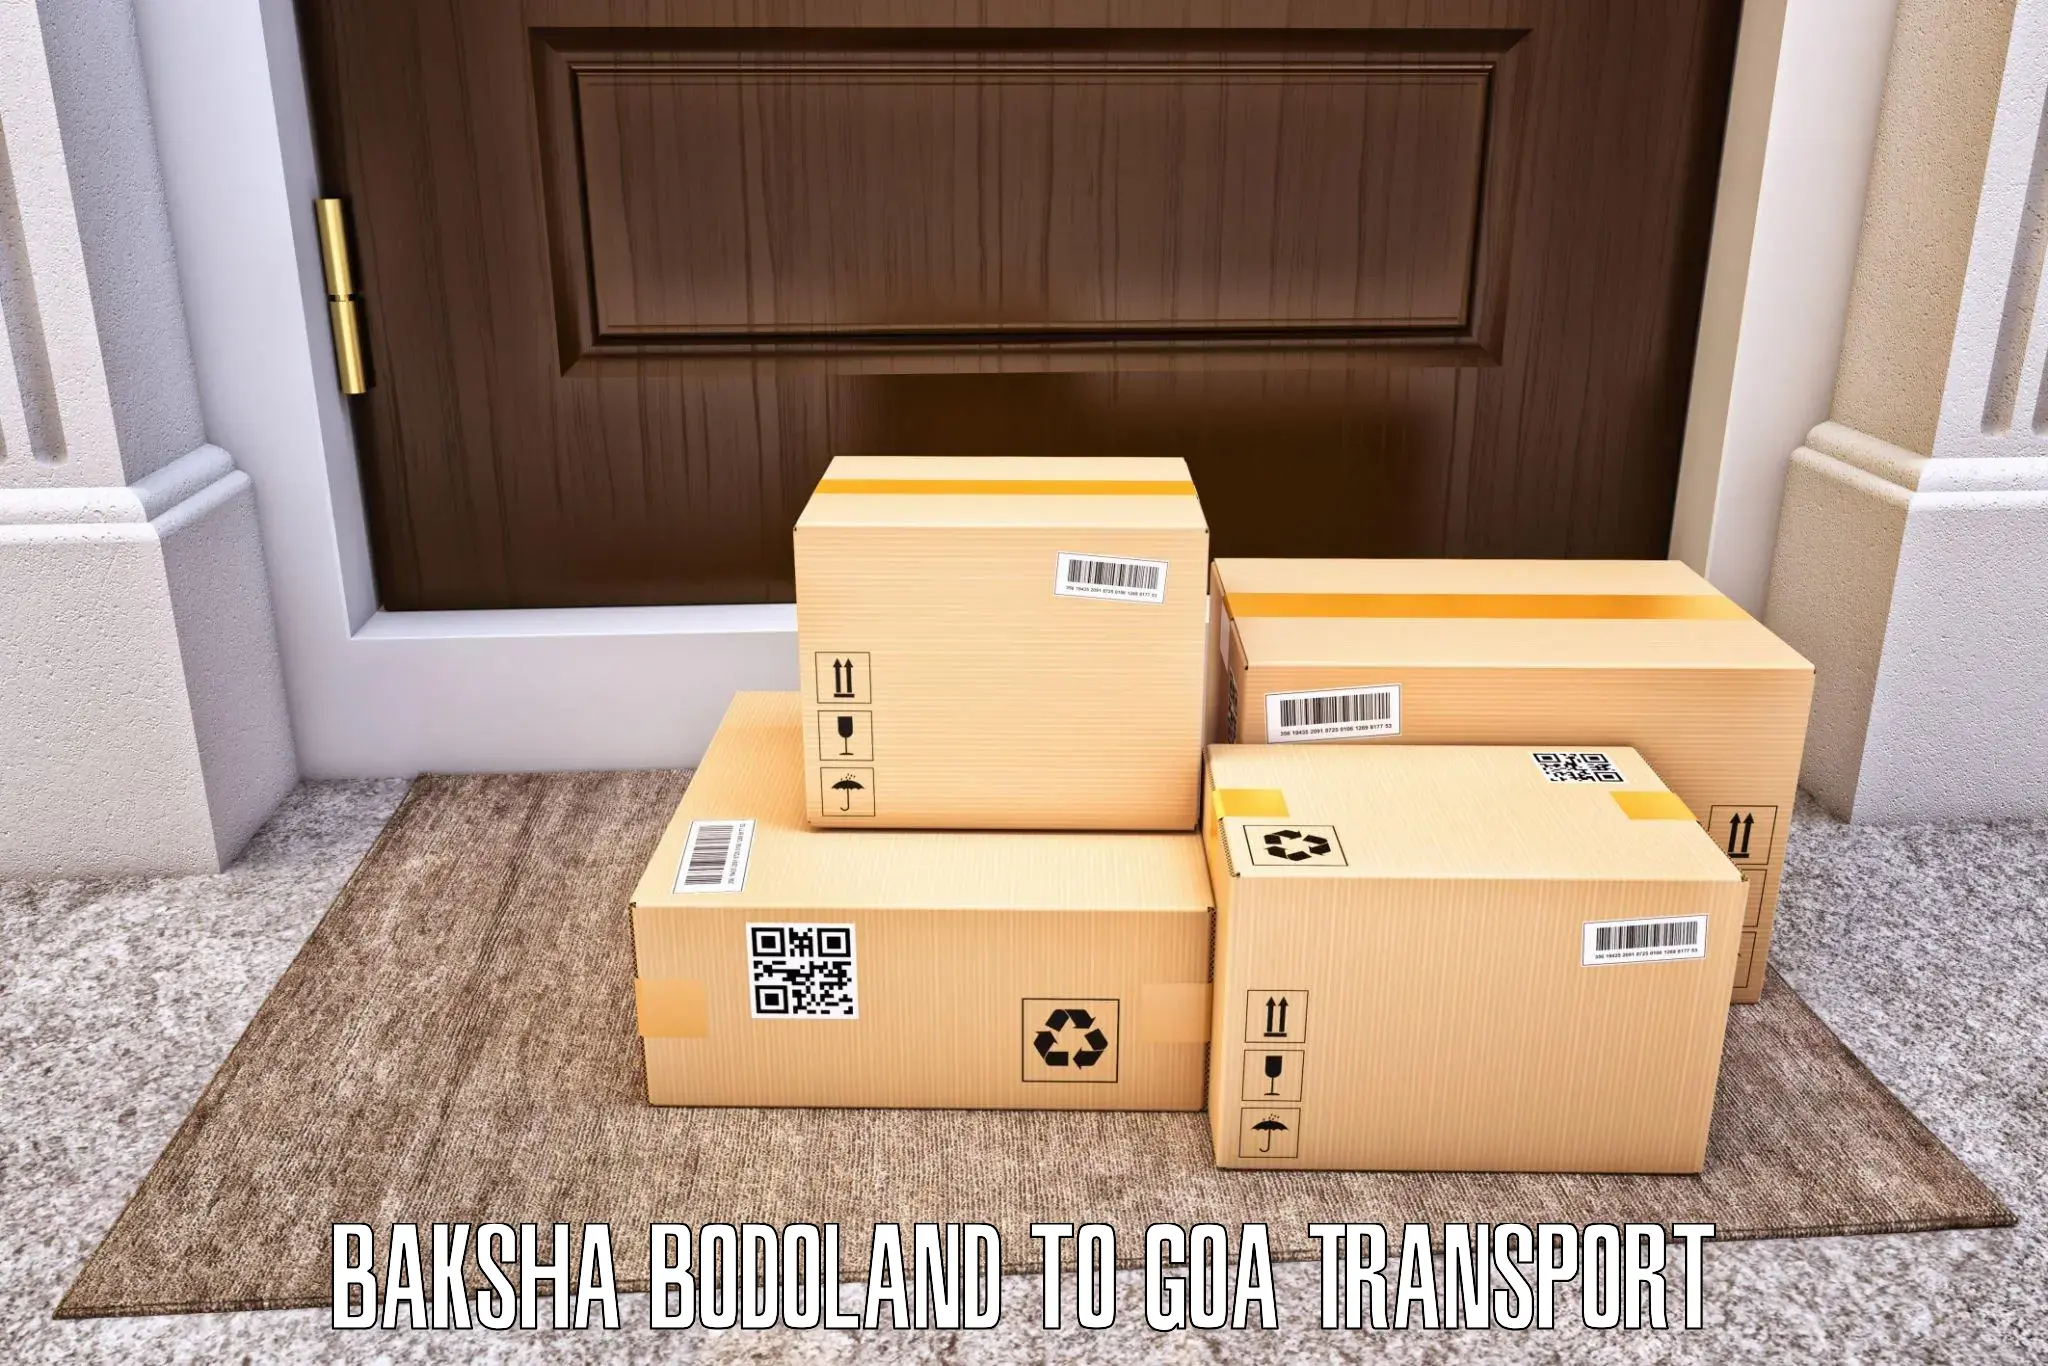 Luggage transport services Baksha Bodoland to Goa University